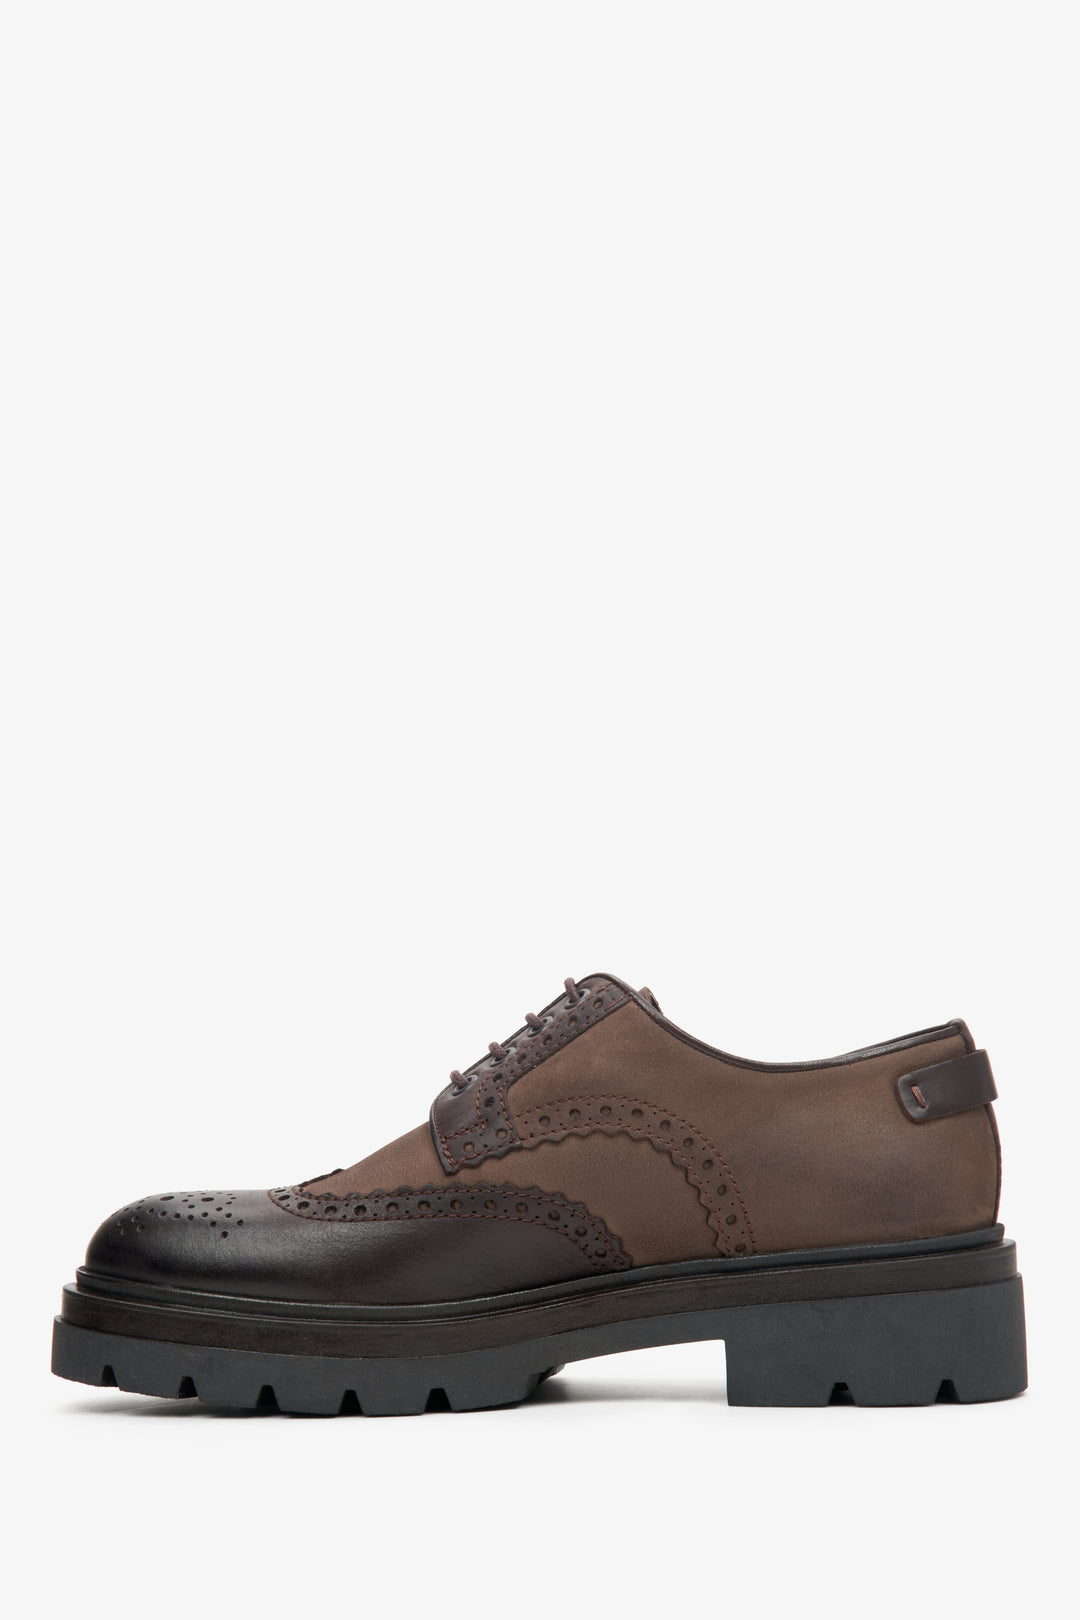 Męskie półbuty sznurowane typu oksford w kolorze brązowym marki Estro - profil butów.